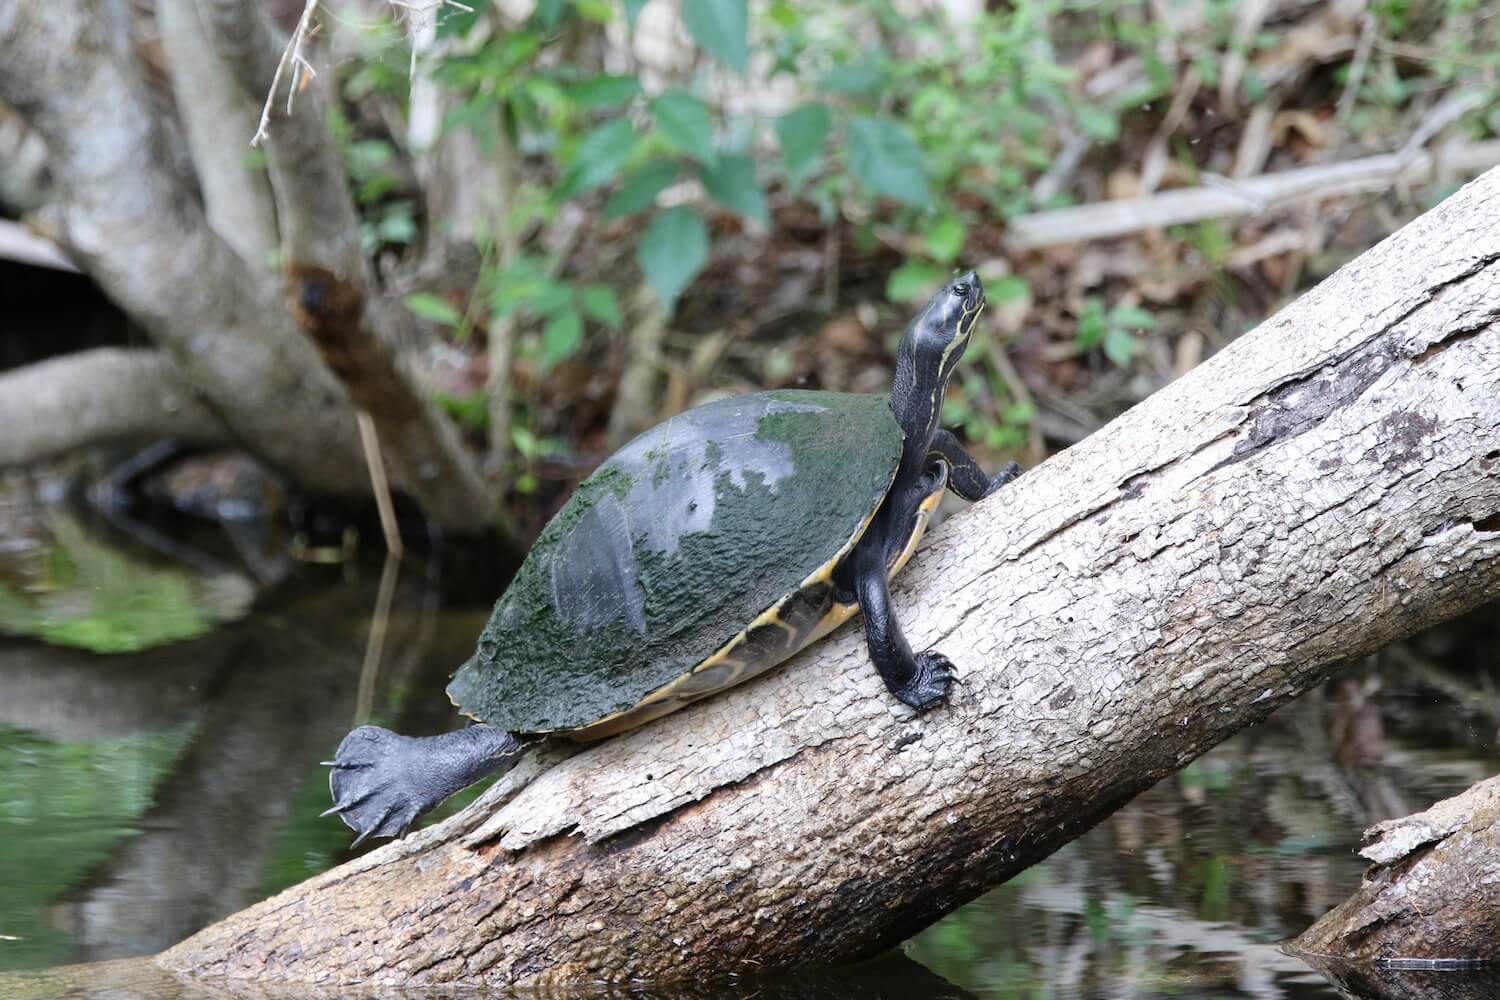 Turtle on log.